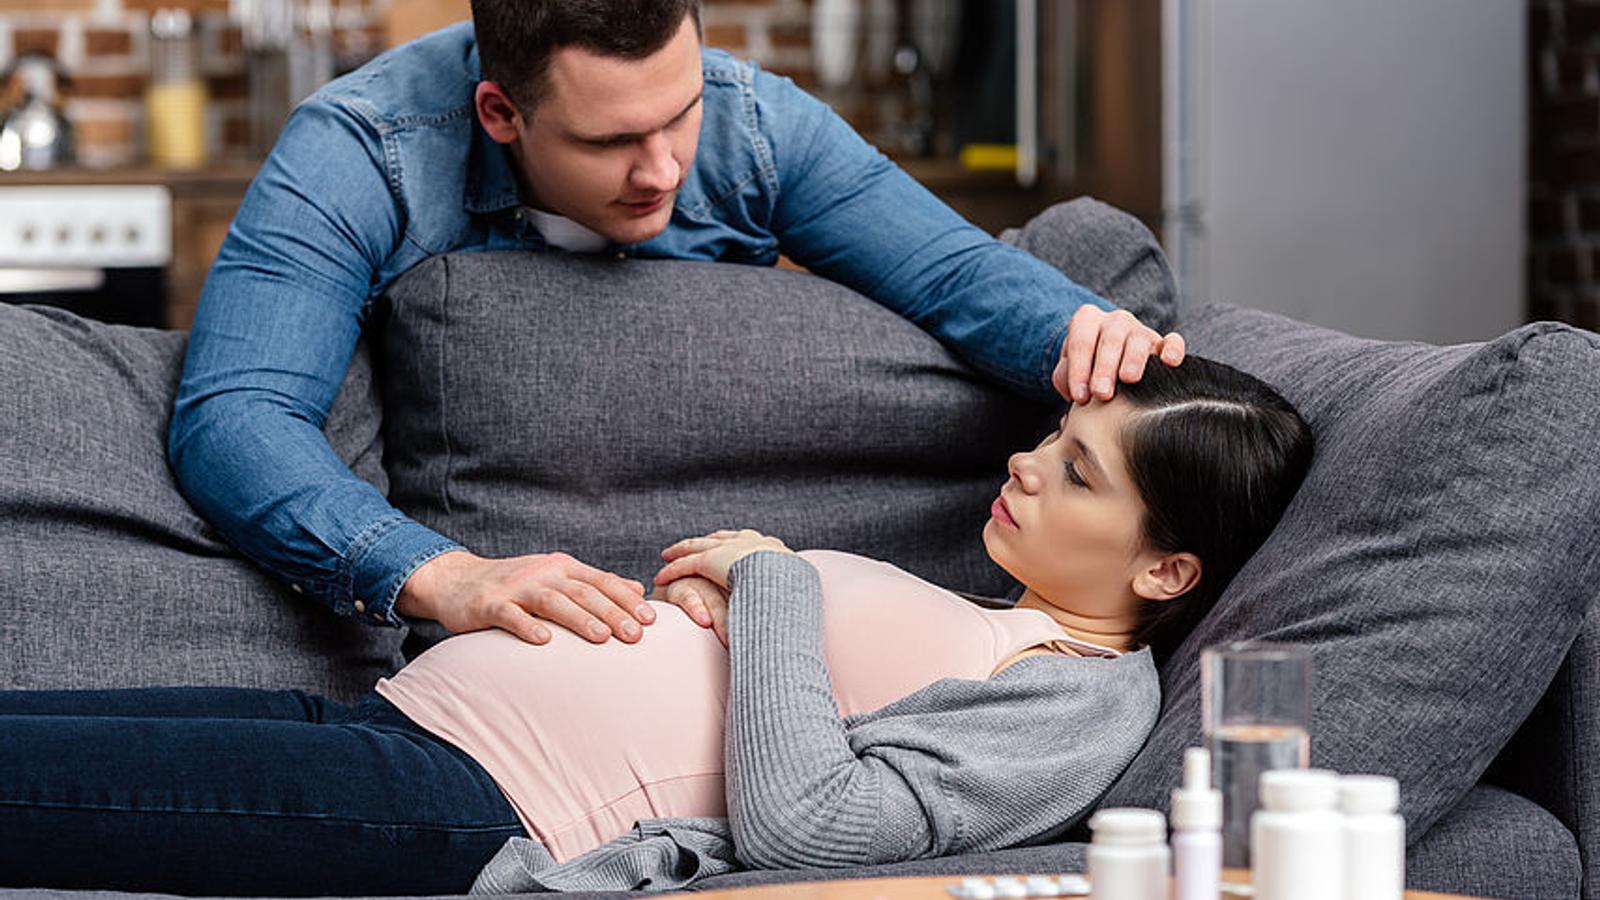 Schwangere Frau liegt am Sofa, vor ihr stehen Medikamente und ihr Mann kümmert sich um sie. 